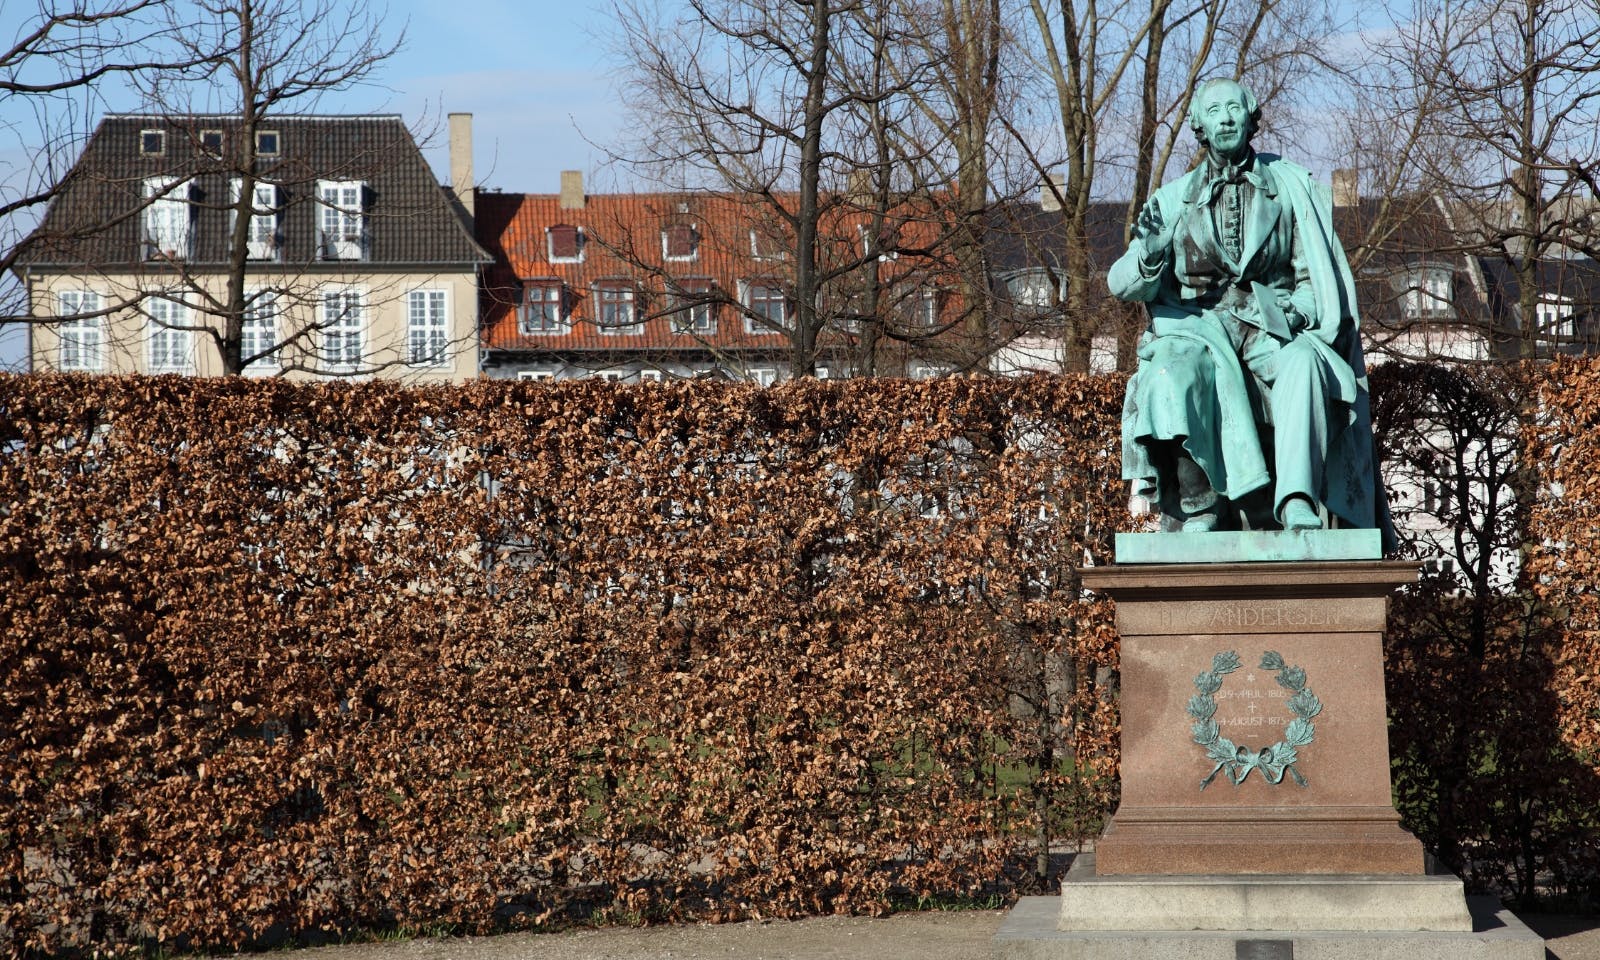 Statue Christian Andersen in Kongens Have in Kopenhagen